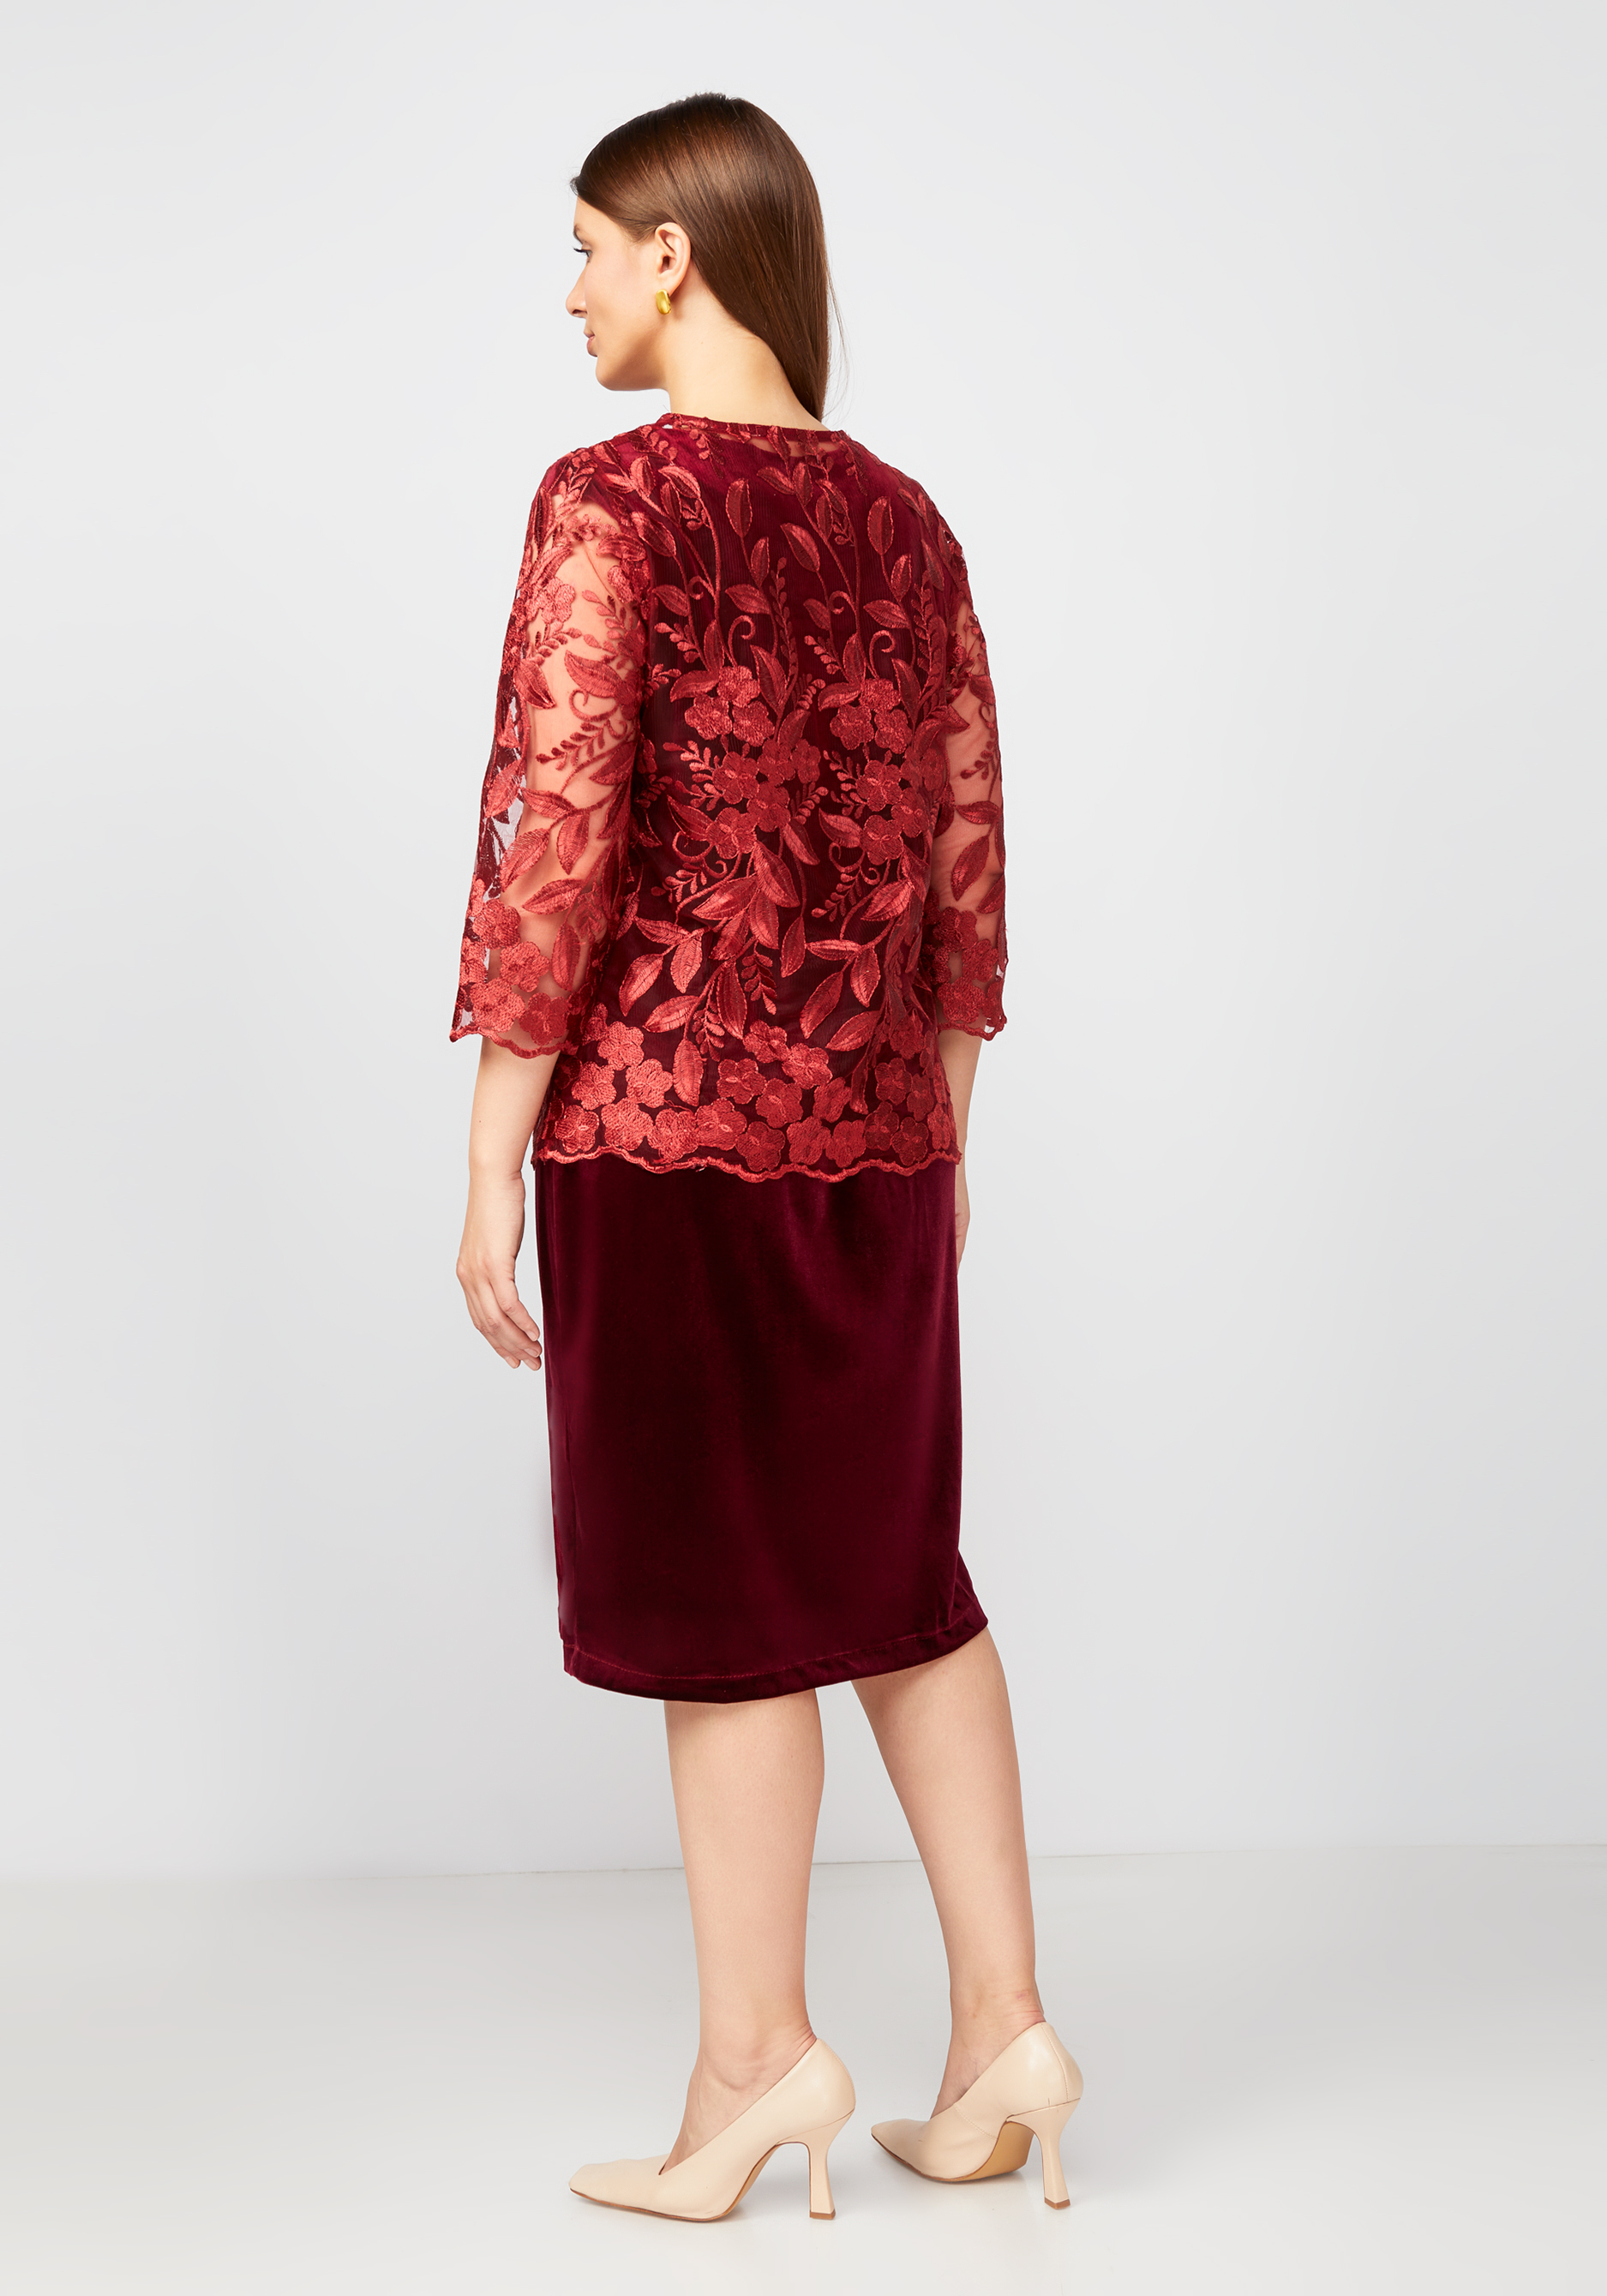 Платье с кружевной блузой Bel Fiore, размер 48, цвет кофейный - фото 8